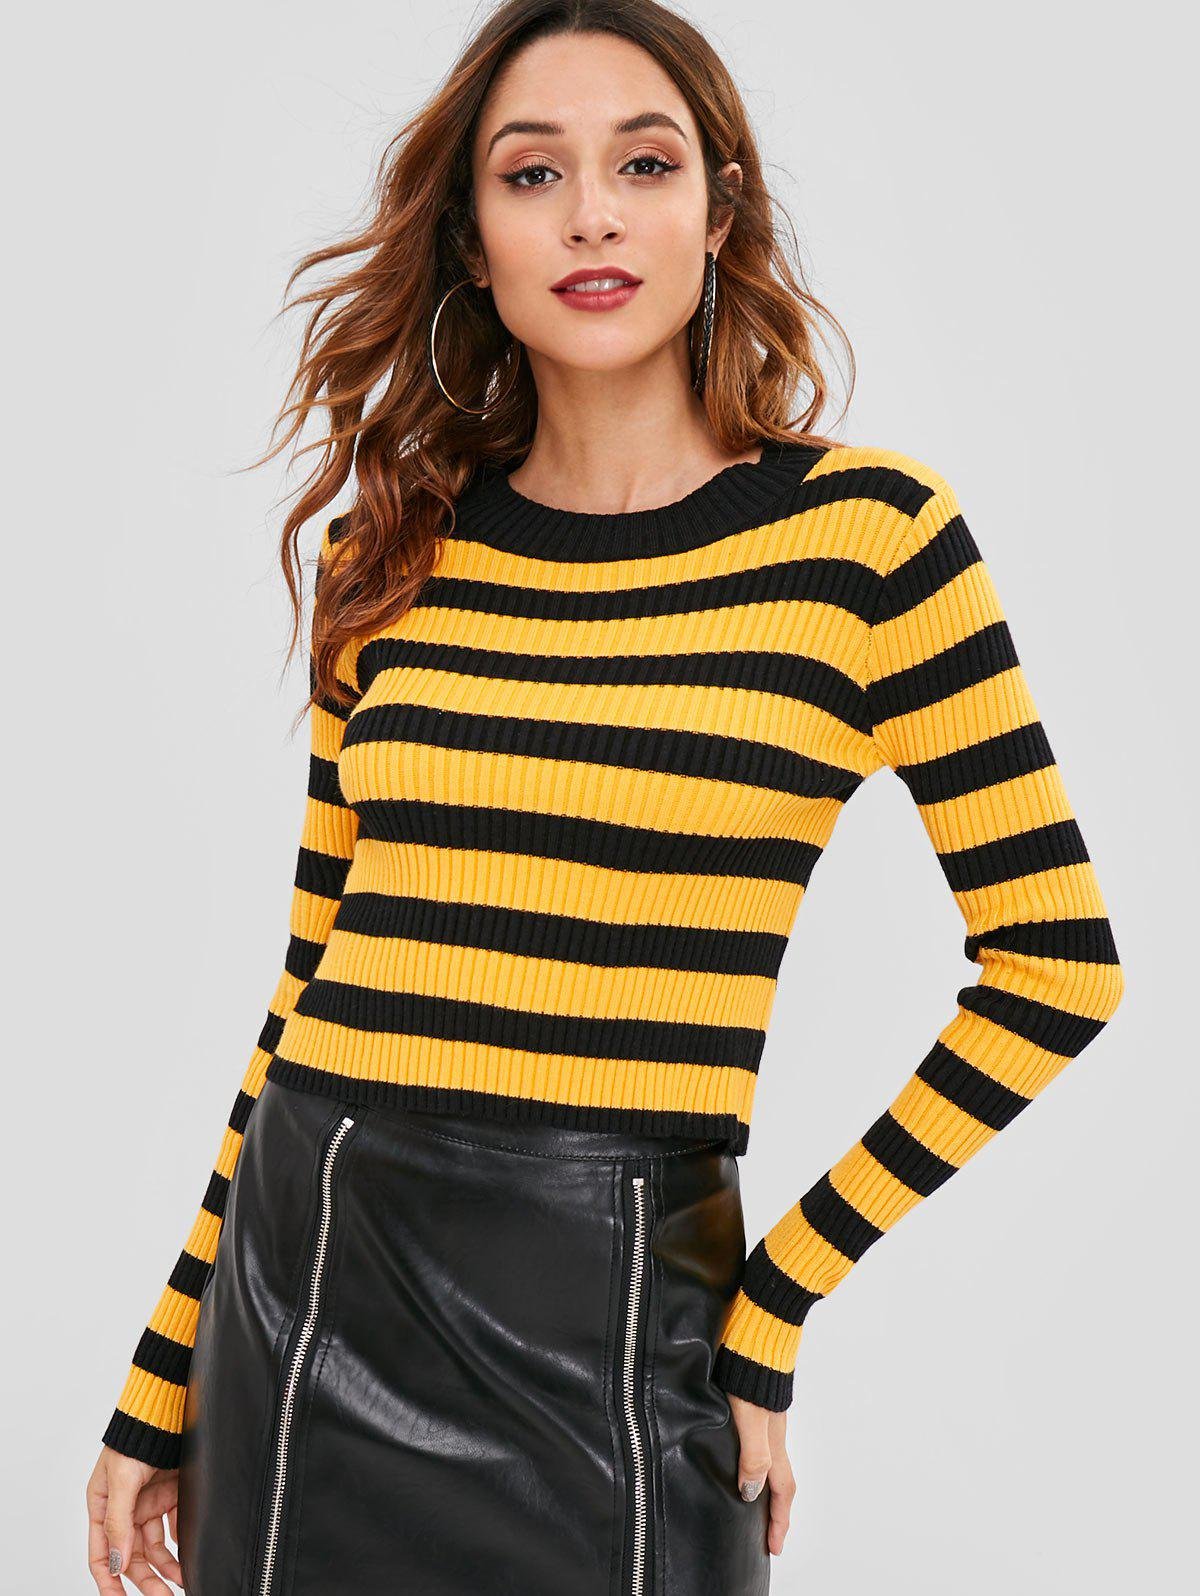 Купить желтую полоску. Желтый свитер в полоску. Свитер в черно желтую полоску. Полосатый свитер черно желтый. Кофта желто черная полоска.